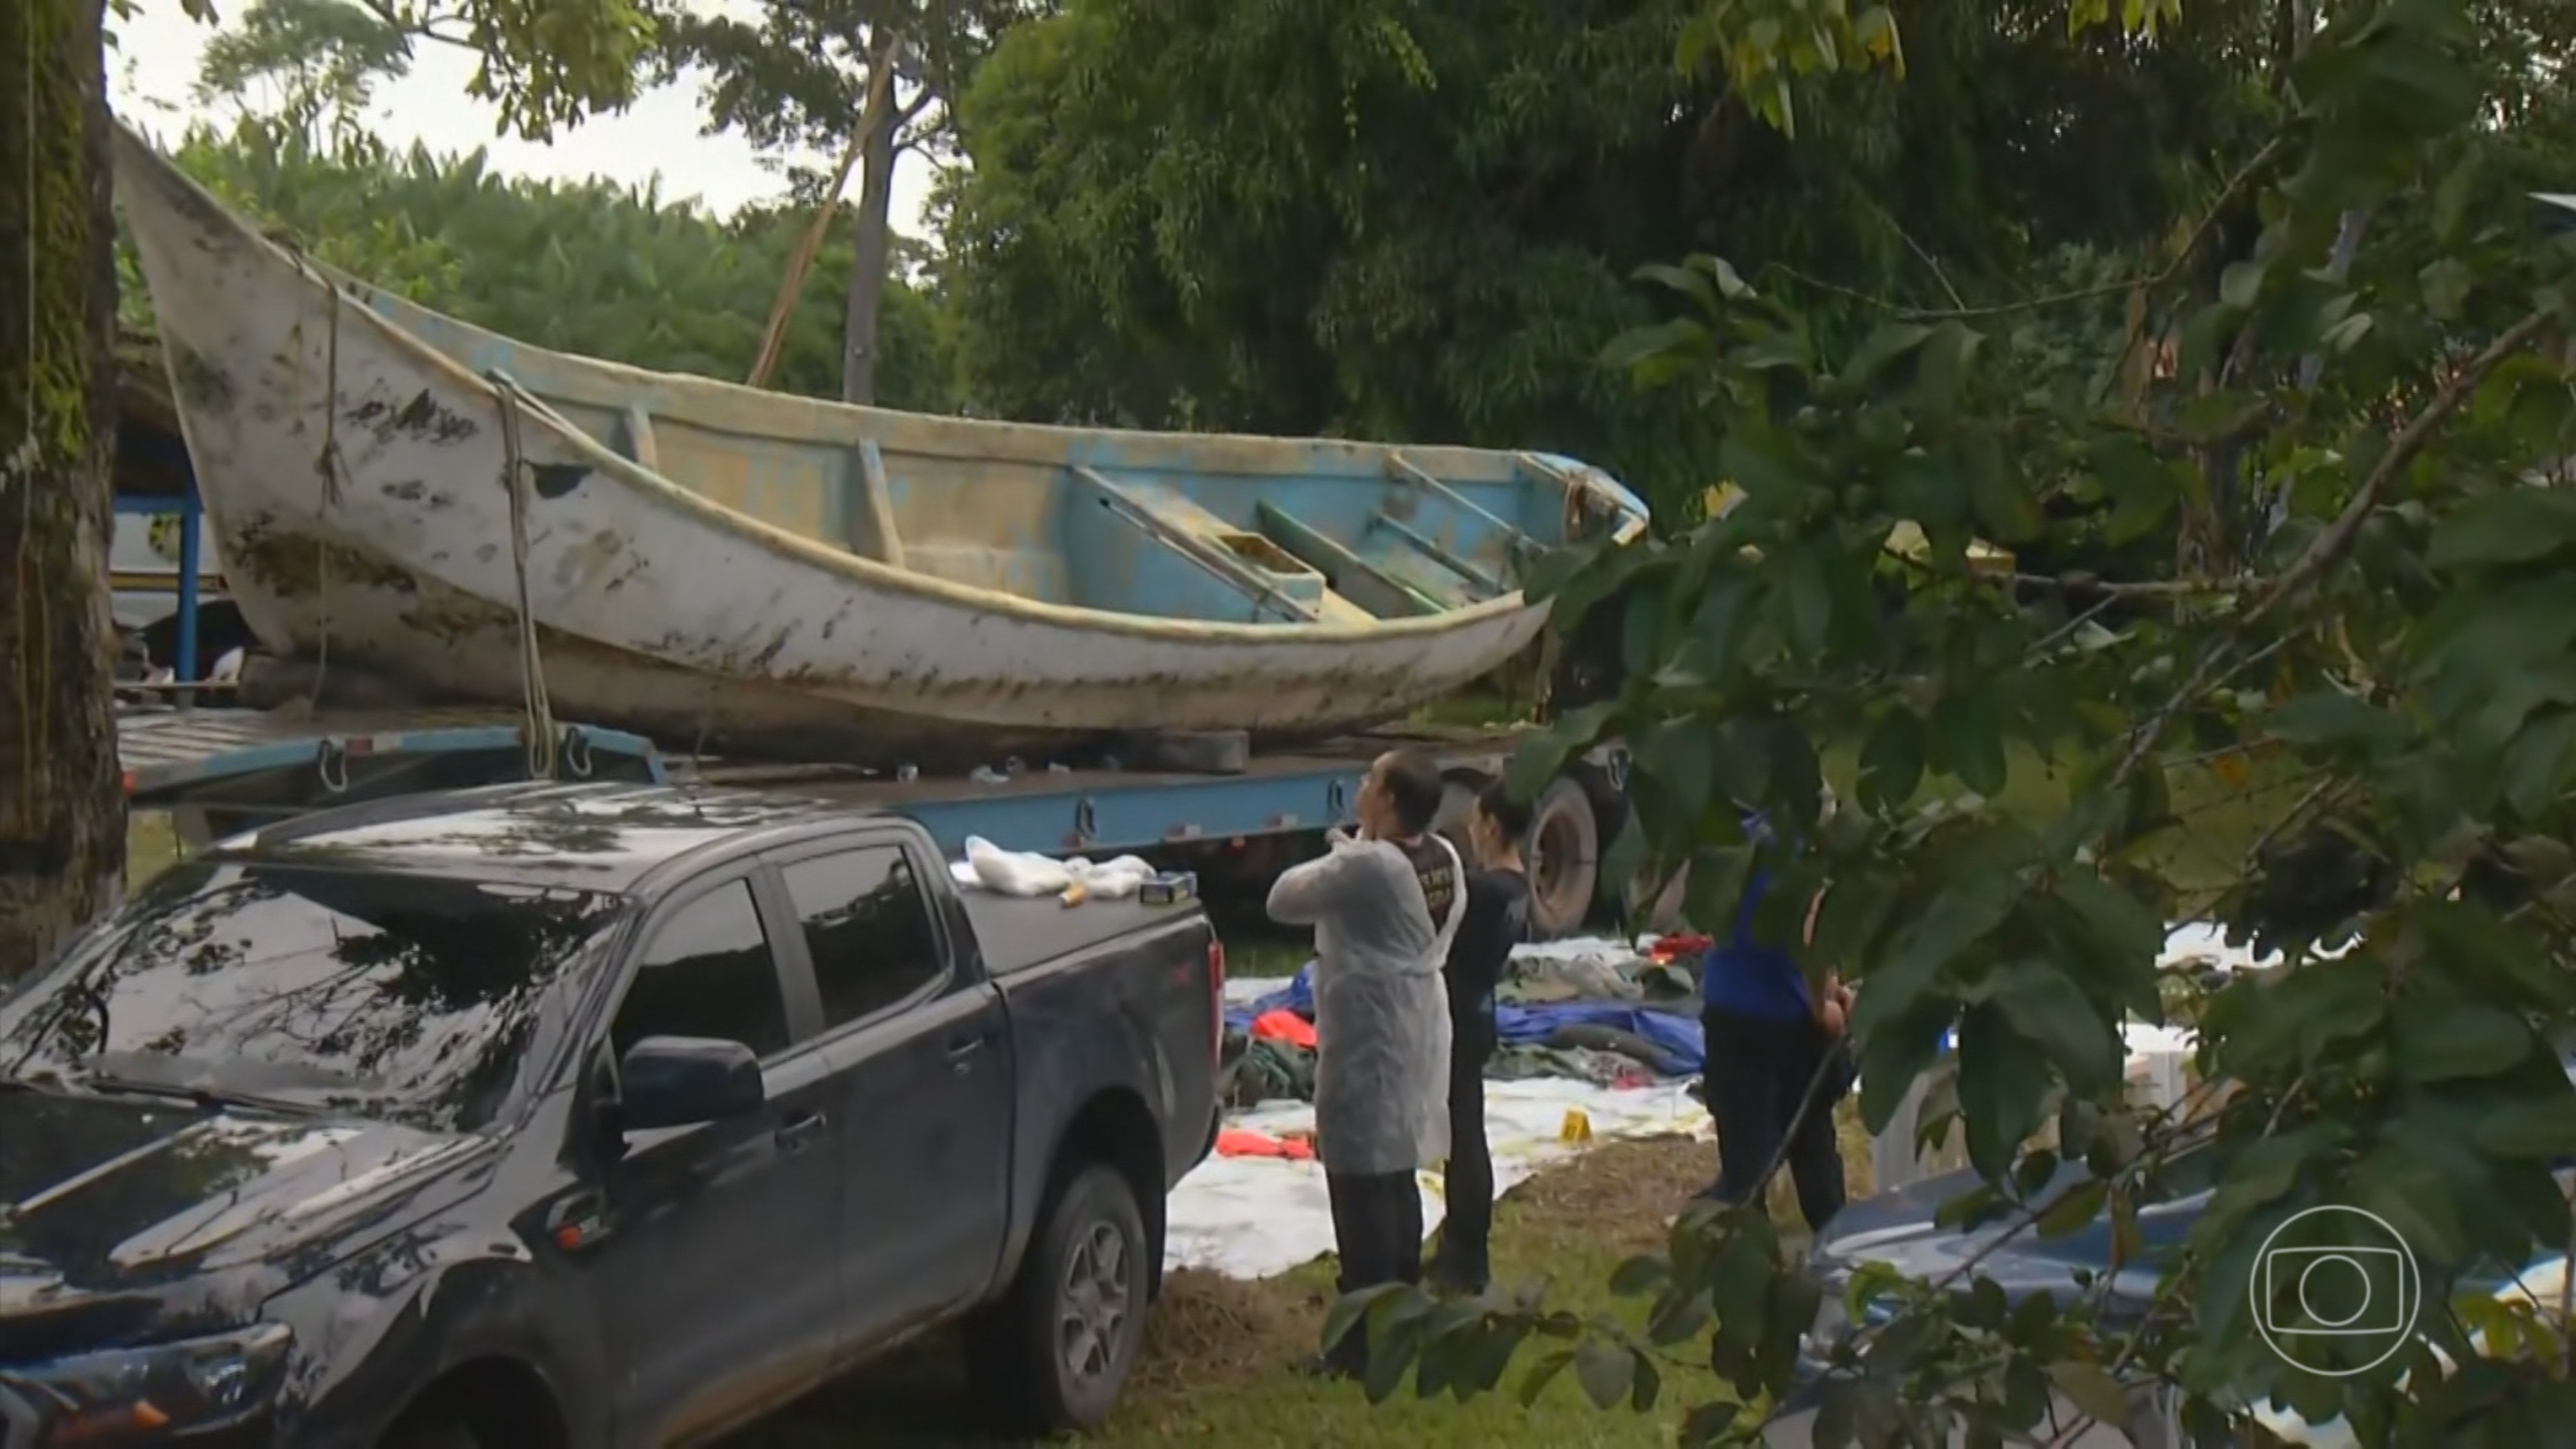 Documentos indicam que barco encontrado com 9 corpos no Pará era de imigrantes africanos